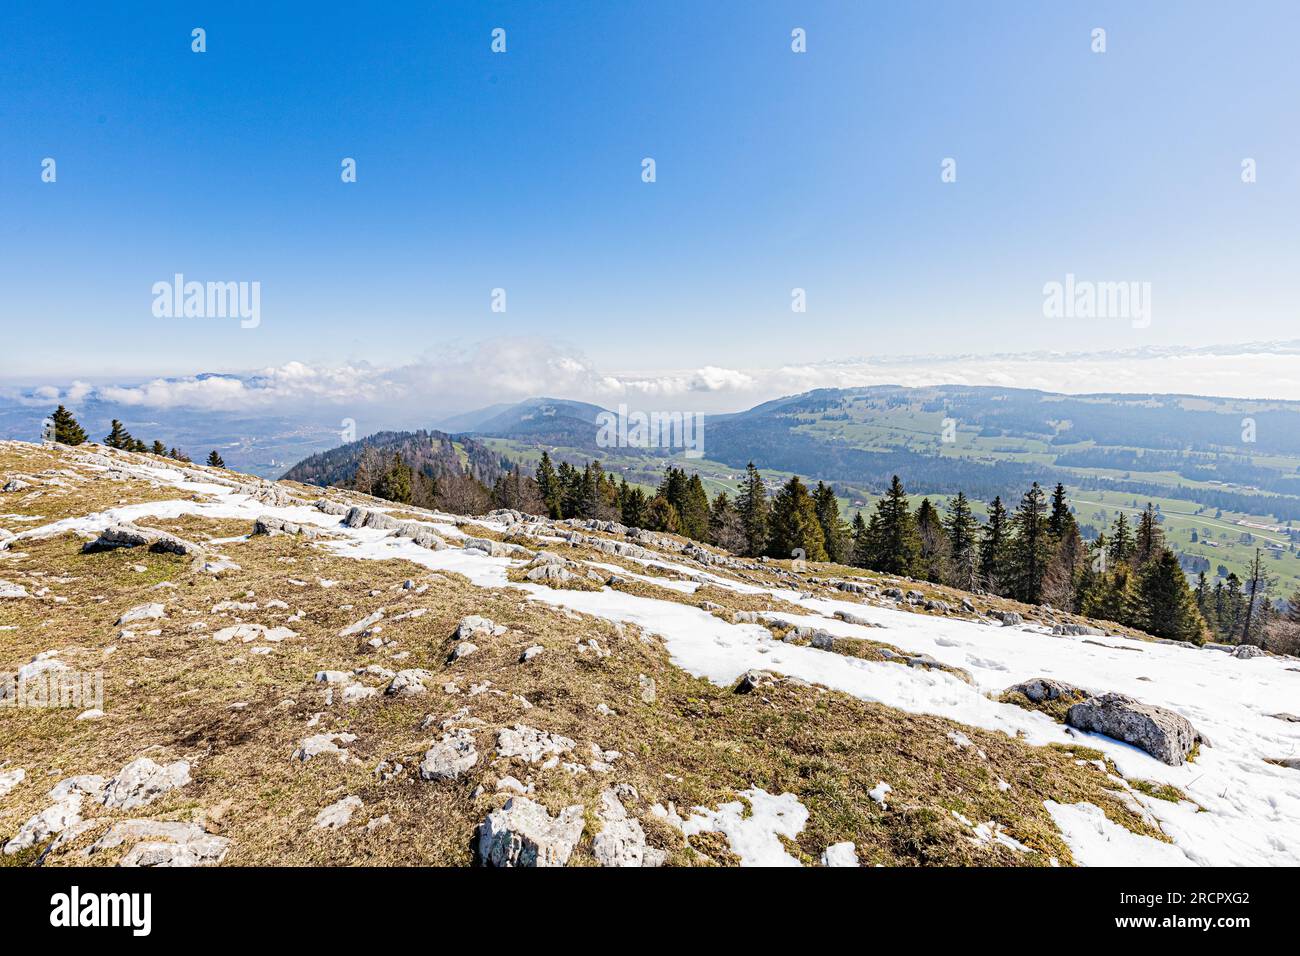 La Dent de Vaulion en Suisse dans la vallée de Joux, canton de Vaud. Située à 1500m d'altitude avec un panorama à 360°. Vue sur le lac de Joux. Lorsqu Stock Photo